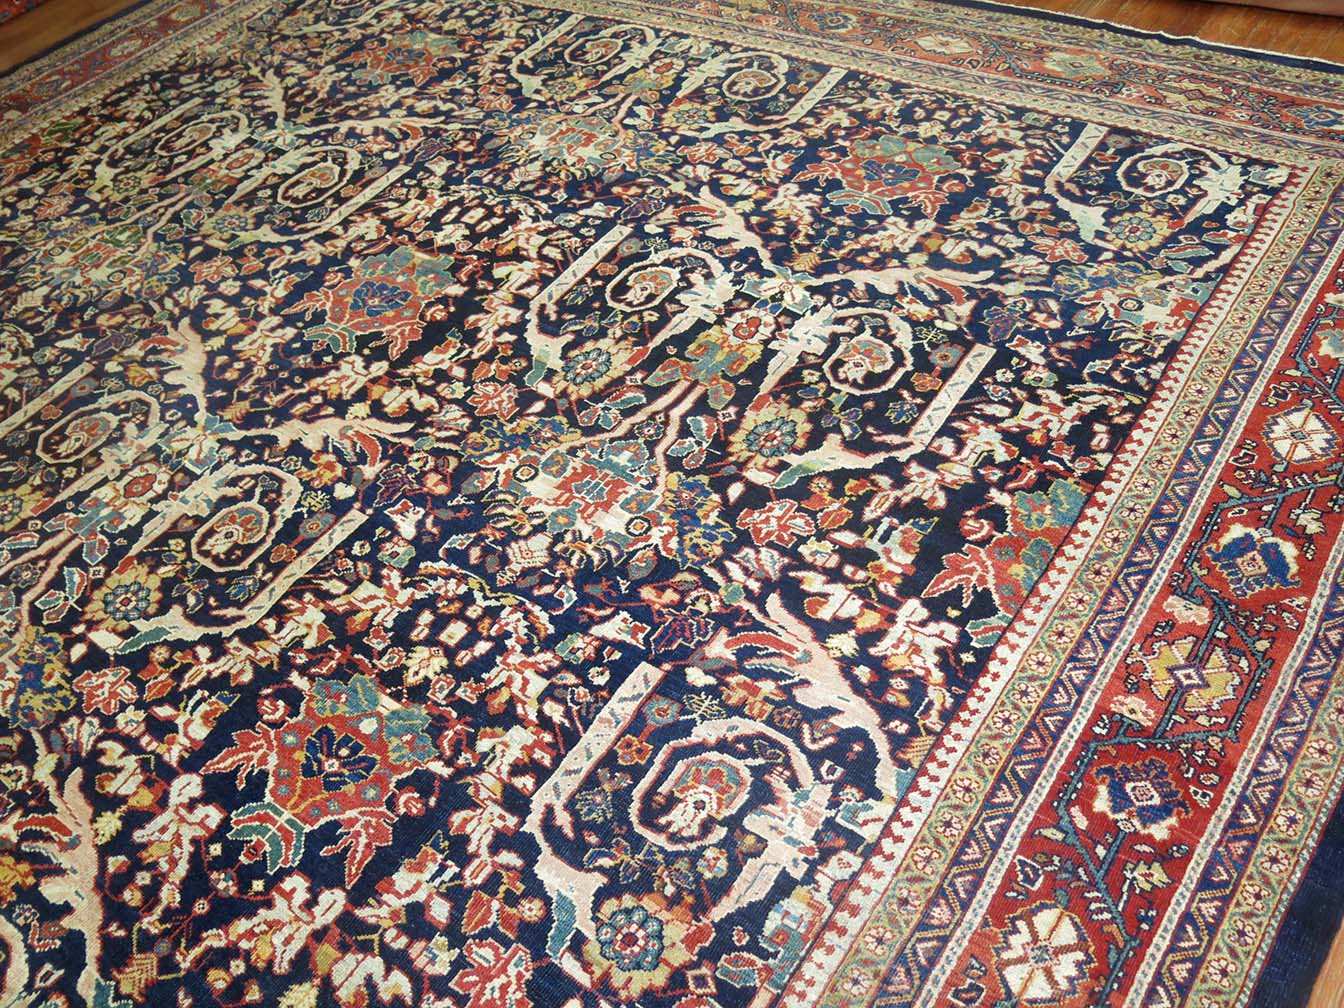 Antique mahal Carpet - # 53731